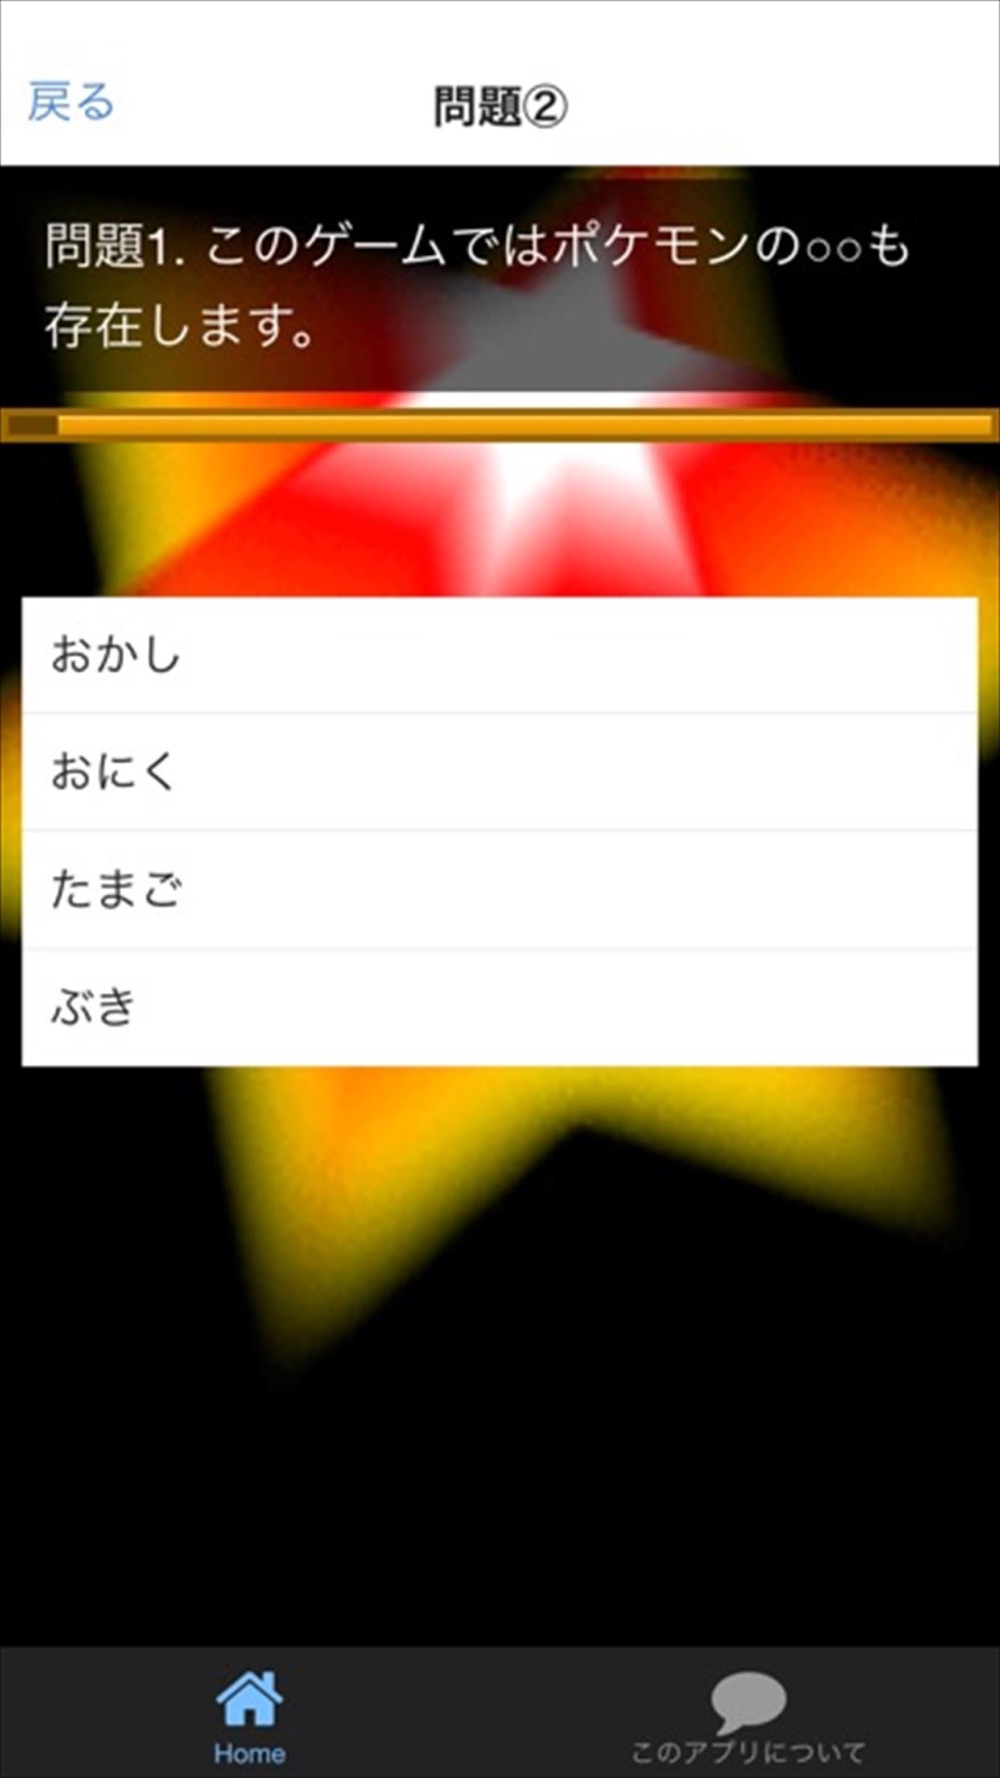 攻略検定 For ポケモンgo Free Download App For Iphone Steprimo Com